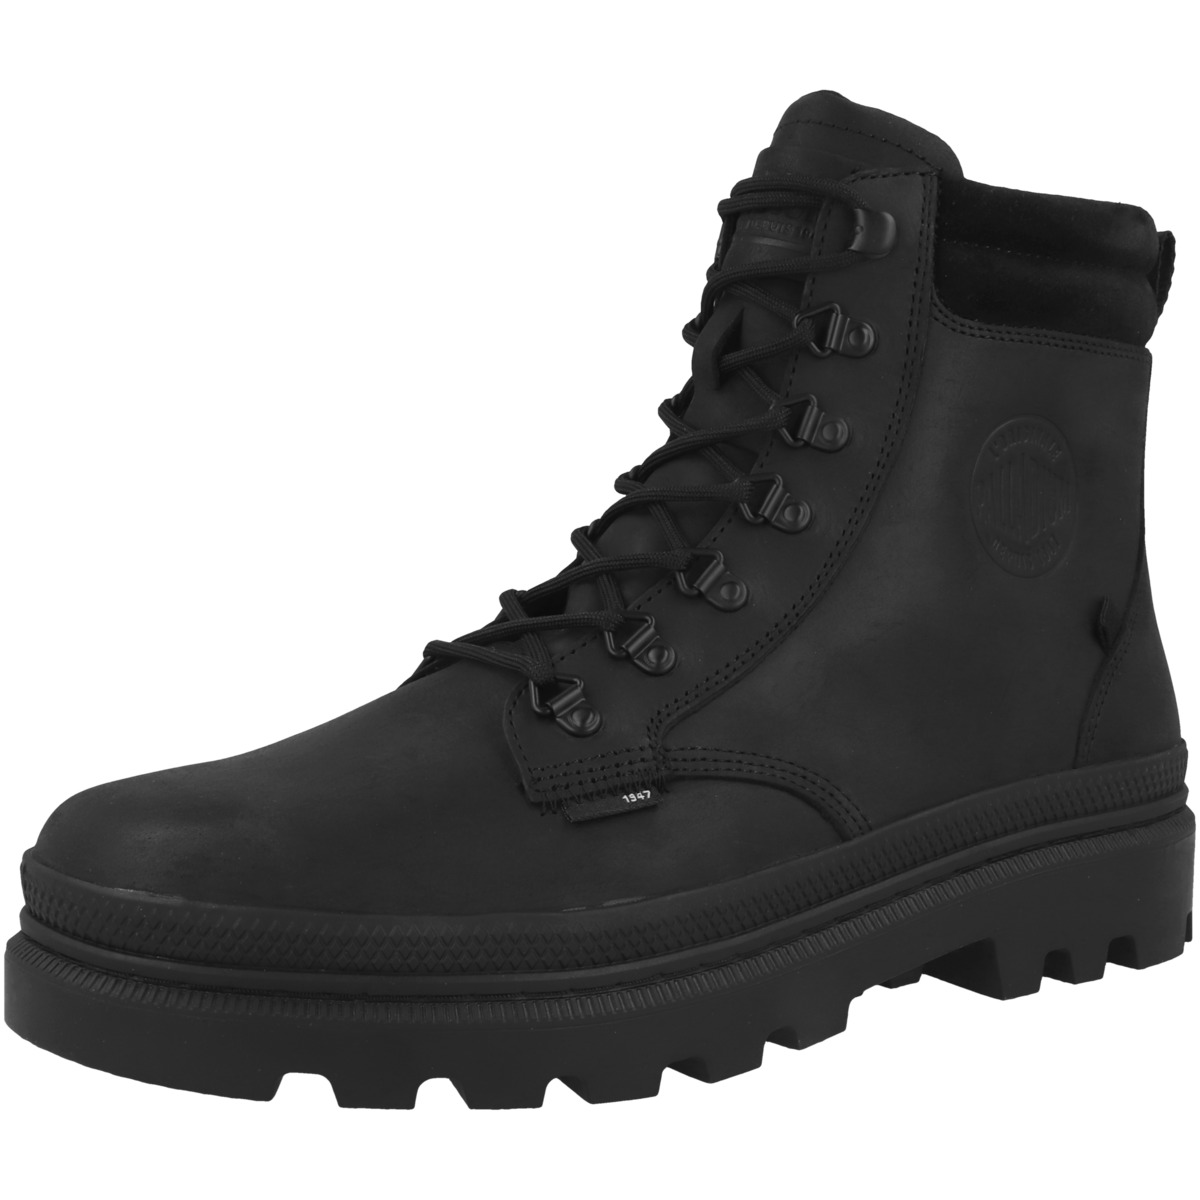 Palladium Pallatrooper Hiker Leather Boots schwarz